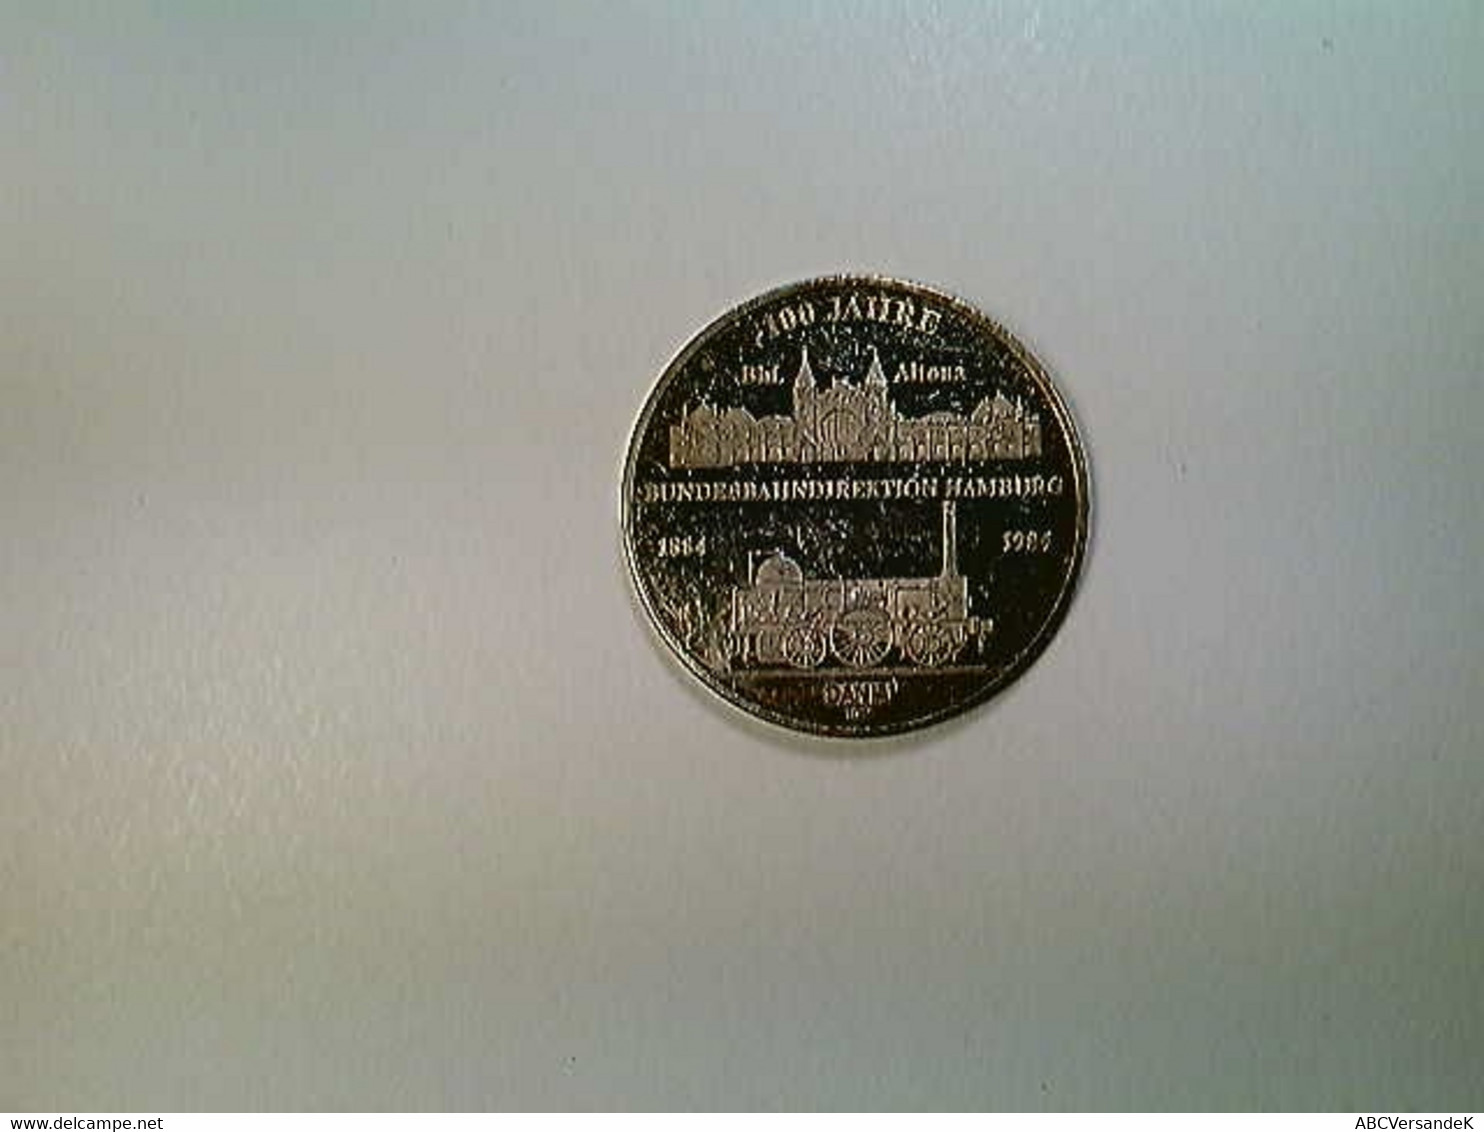 Medaille Hamburg 100 Jahre Bundesbahndirektion 1884-1984, Silber 1000 - Numismatics